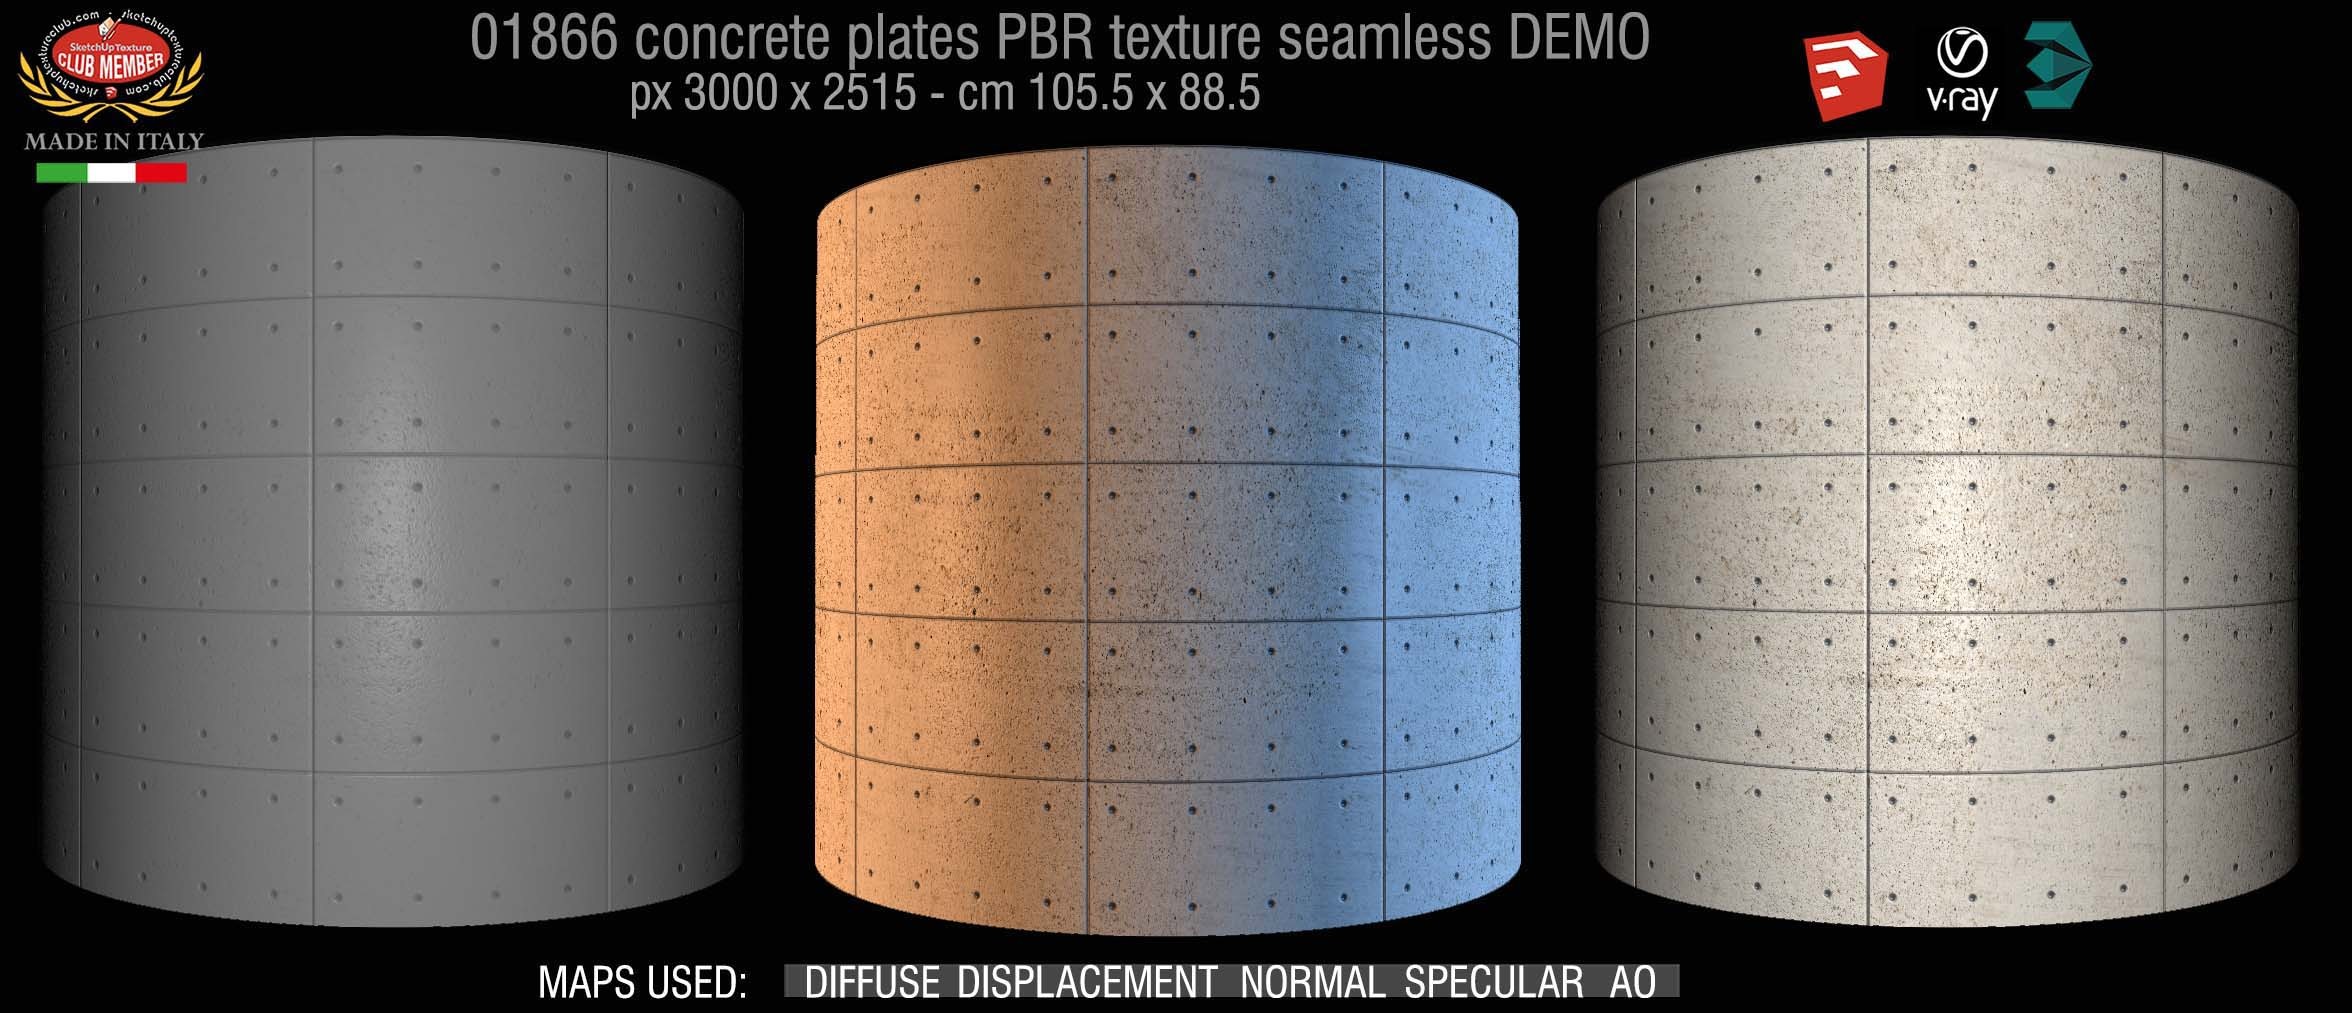 01866 Tadao Ando concrete plates PBR texture seamless DEMO